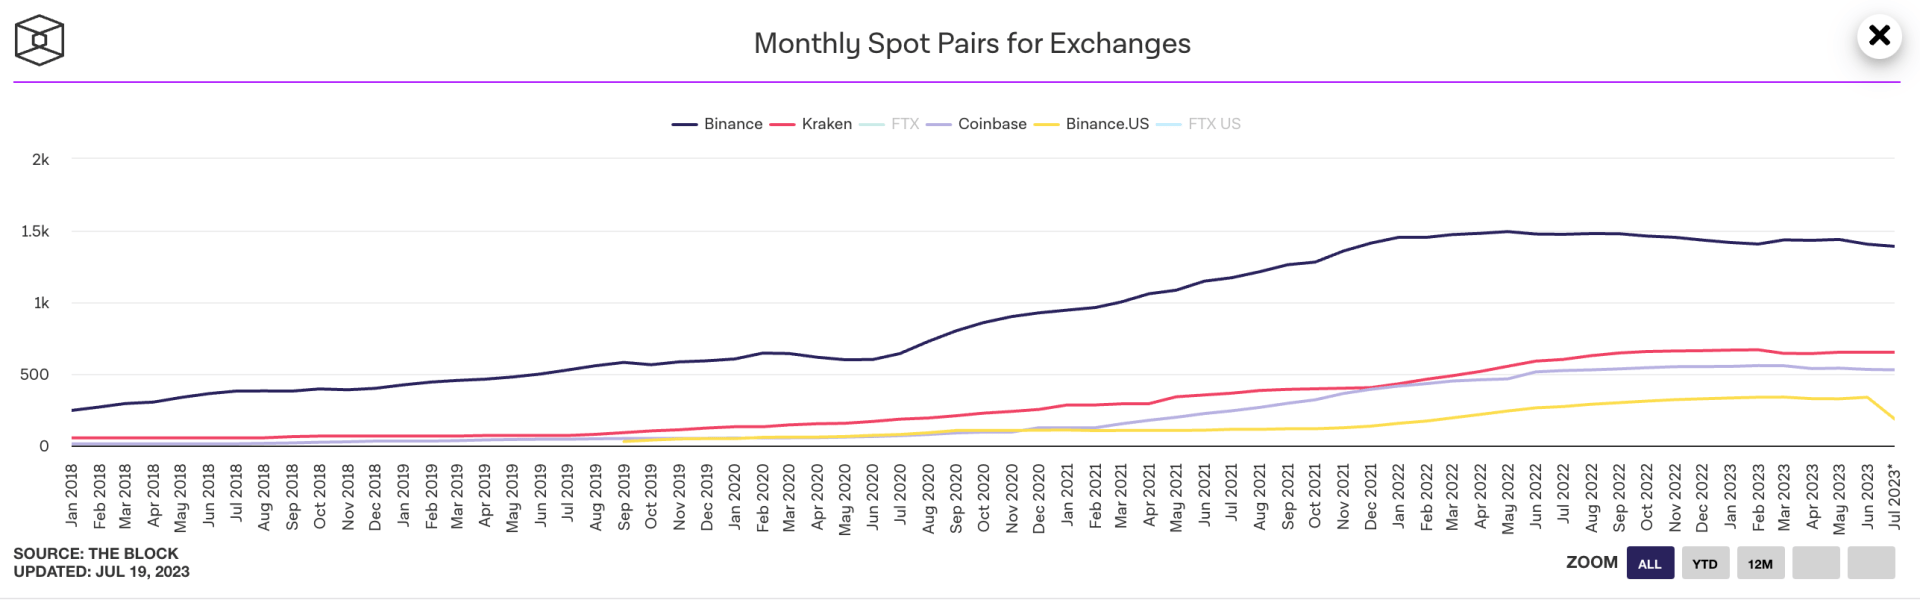 Le nombre de paires disponibles sur les exchanges est en train de chuter.